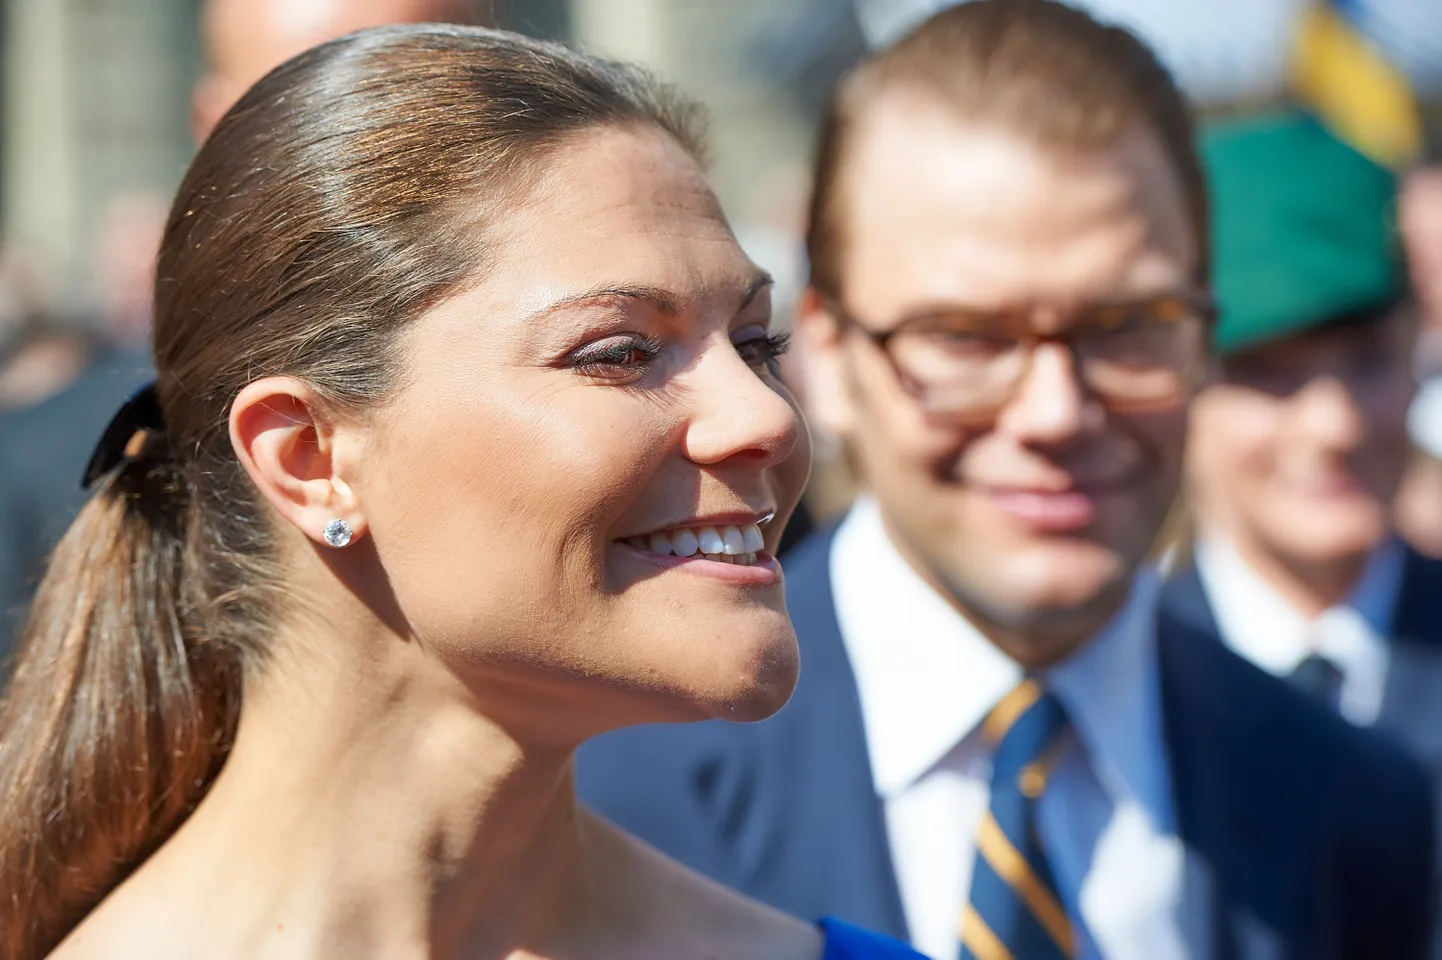 Rootsi kroonprintsess Victoria ja ta abikaasa prints Daniel juunis 2019 Stockholmis